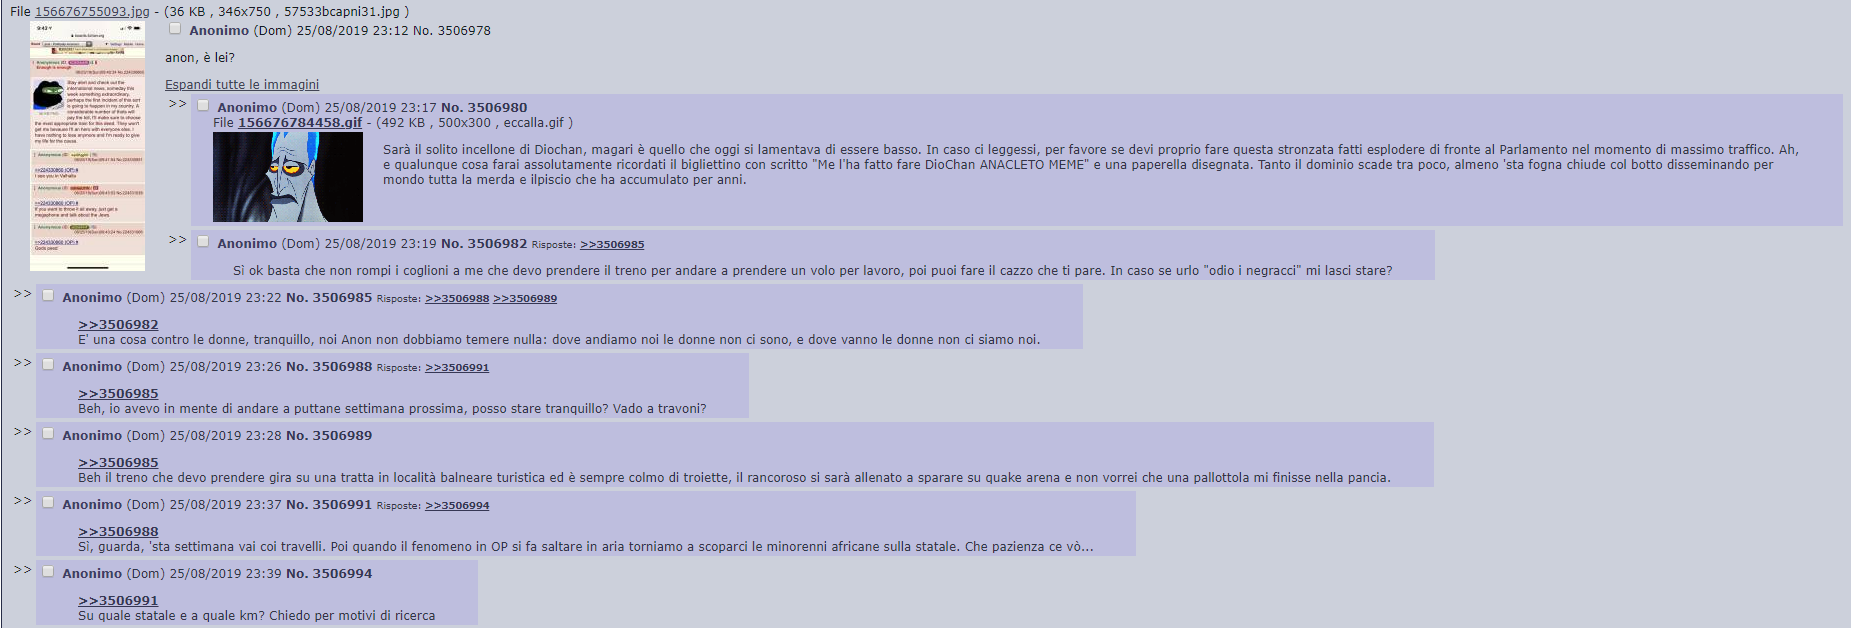 4chan anon italia minacce terrorismo attacco - 3